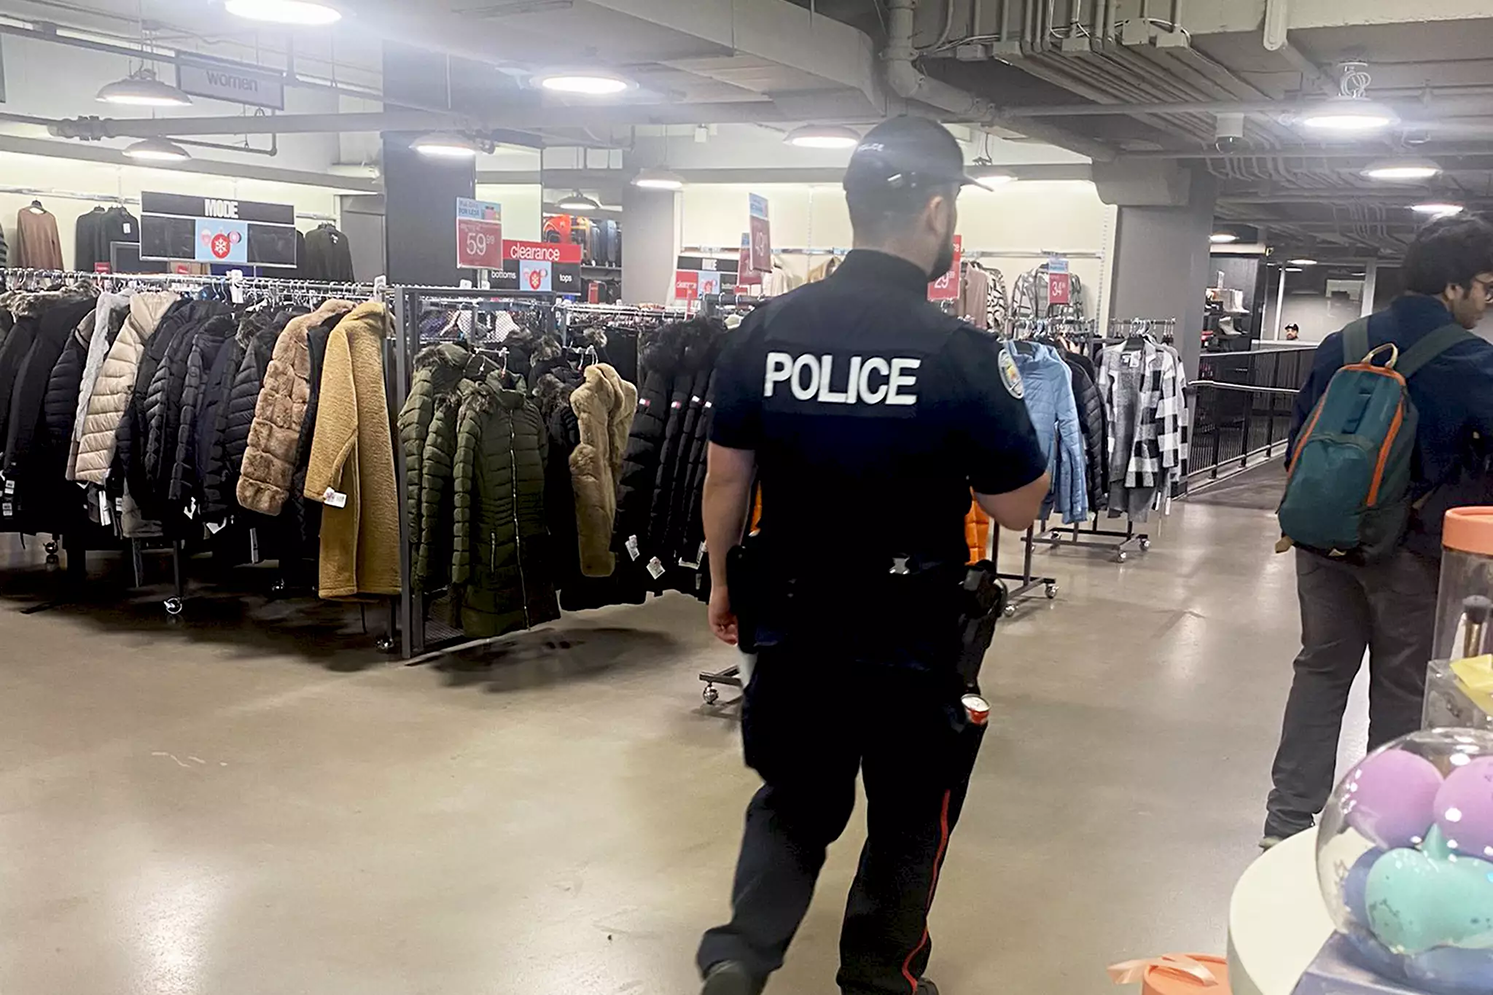 برخی از فروشگاه های تورنتو اخیرا اقدامات امنیتی خود را افزایش داده اند، تا جایی که عملاً افسران پلیس یونیفرم پوش را برای نظارت و جلوگیری از سرقت استخدام کرده اند.